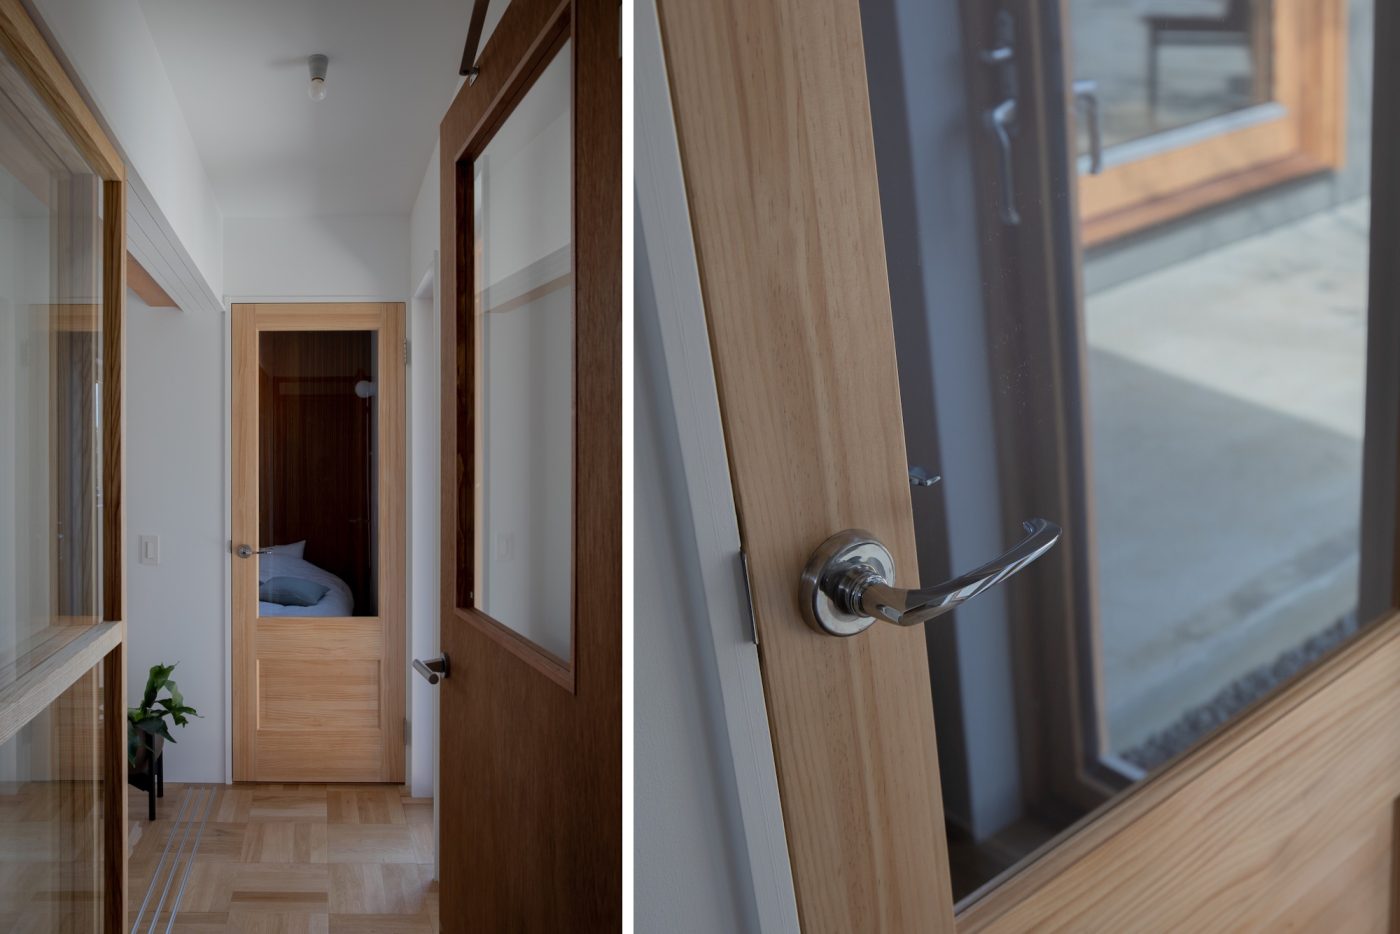 建具も木製の素材感のあるものを。寝室の扉には『船舶ドアパーツ』のレバーハンドルが採用されています。